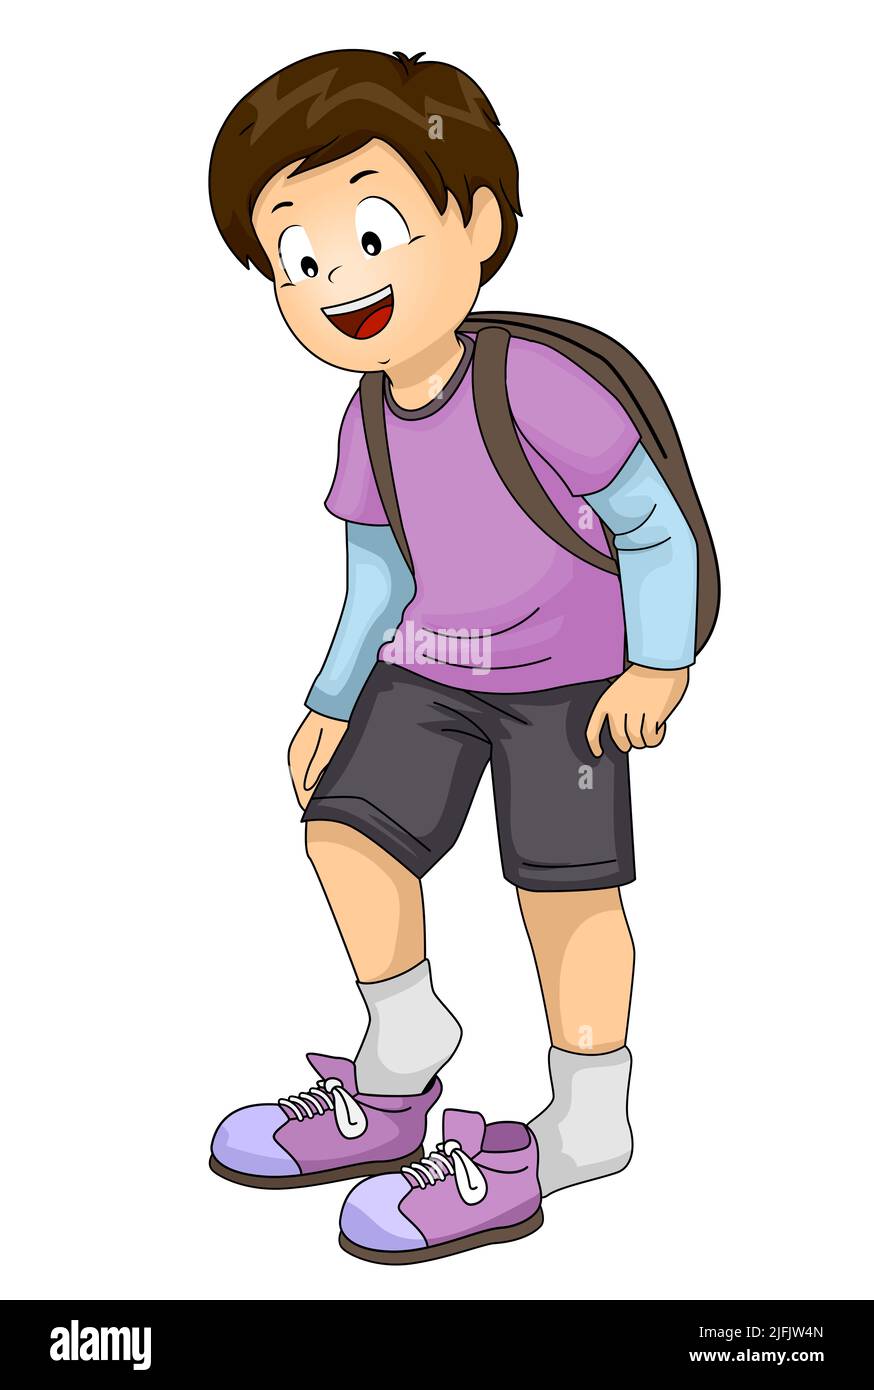 Ilustración de un estudiante de niño sonriente que se pone los zapatos antes de ir a la escuela Foto de stock